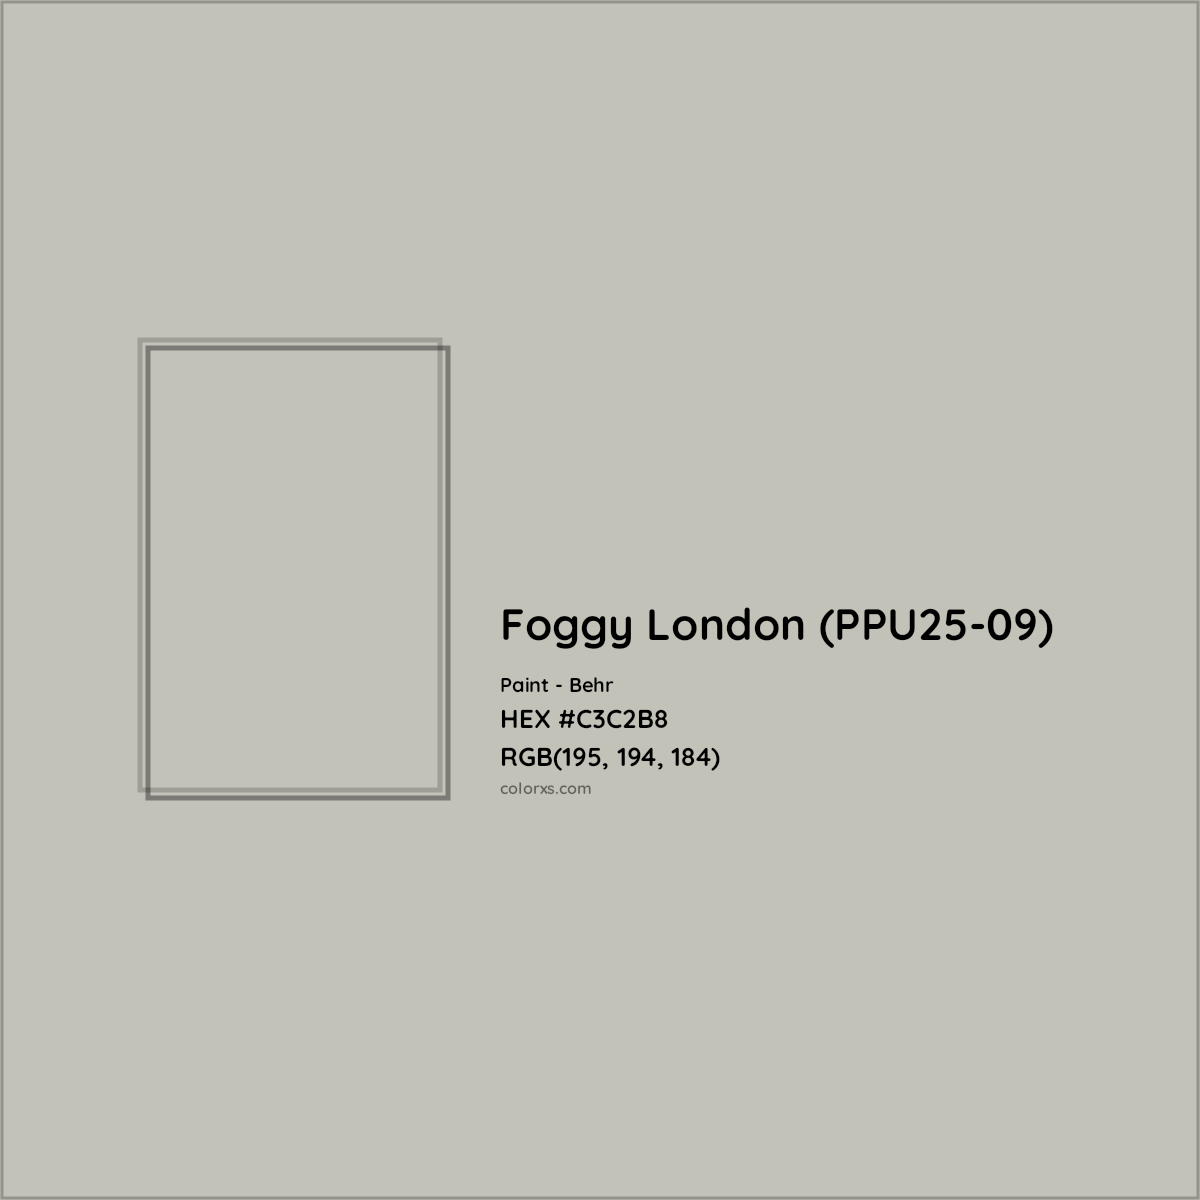 HEX #C3C2B8 Foggy London (PPU25-09) Paint Behr - Color Code